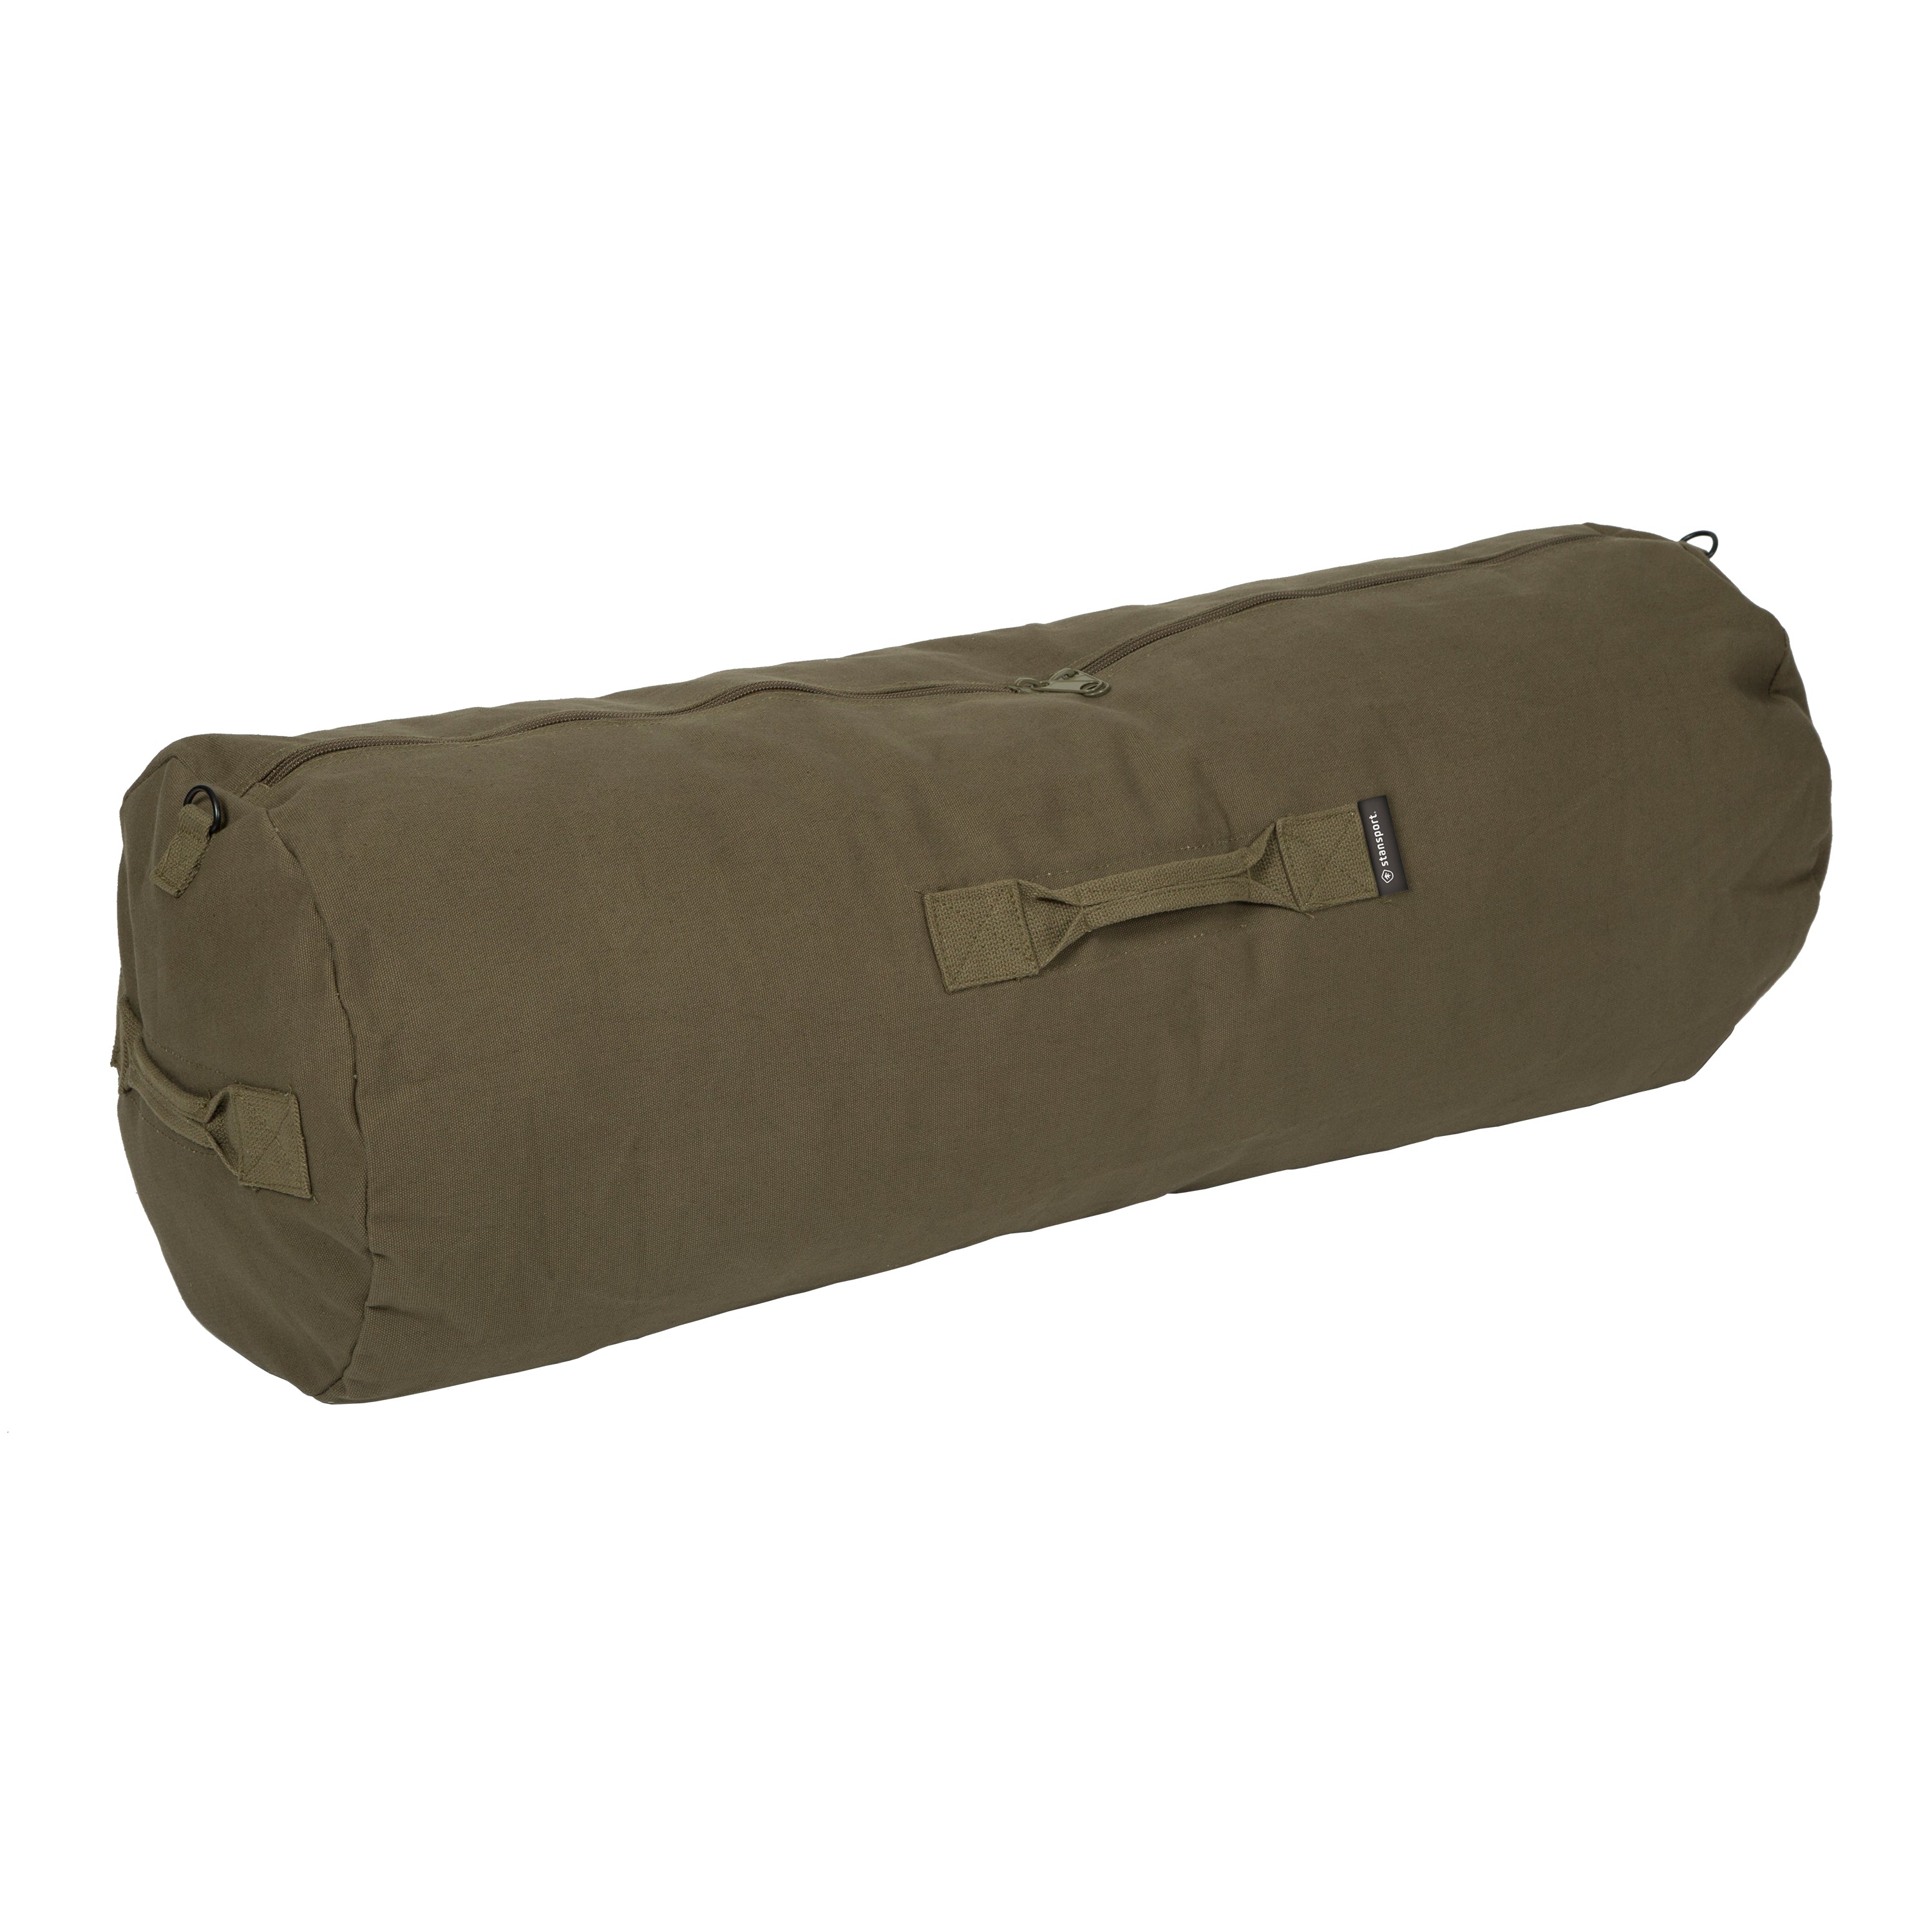 Duffel Bag With Zipper - O.D. - 36 In X 13 In X 13 In